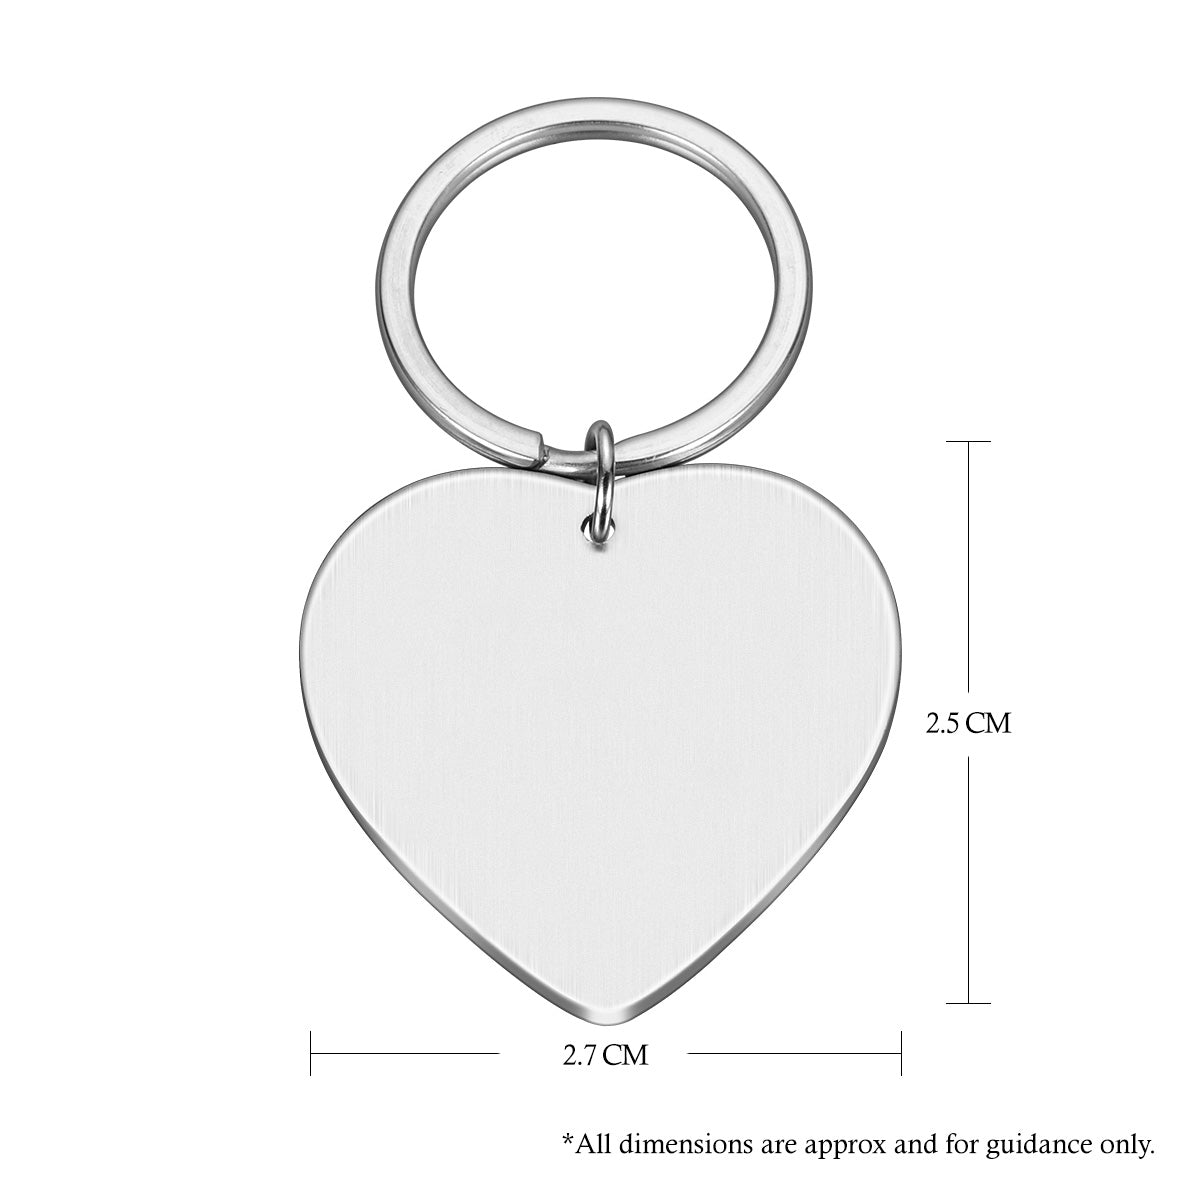 Engraved Heart Key ring Couple Monogram Gift